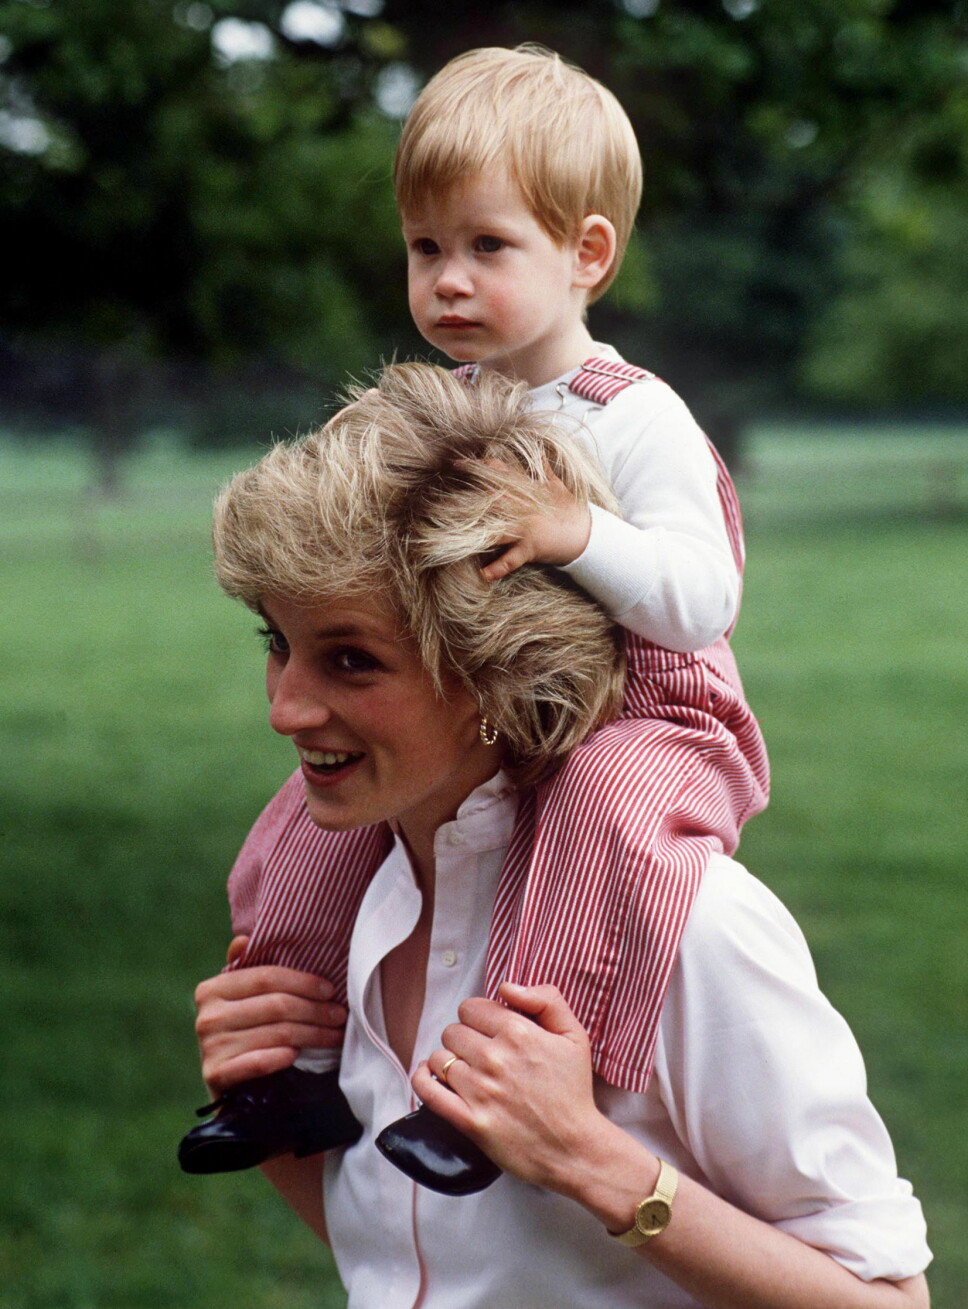 OMKOM: Prinsesse Diana døde som kjent i en bilulykke i Paris i 1997 etter å ha blitt jaget av paparazzier gjennom byen. Her er hun fotografert med prins Harry på skuldrene sommeren 1986.